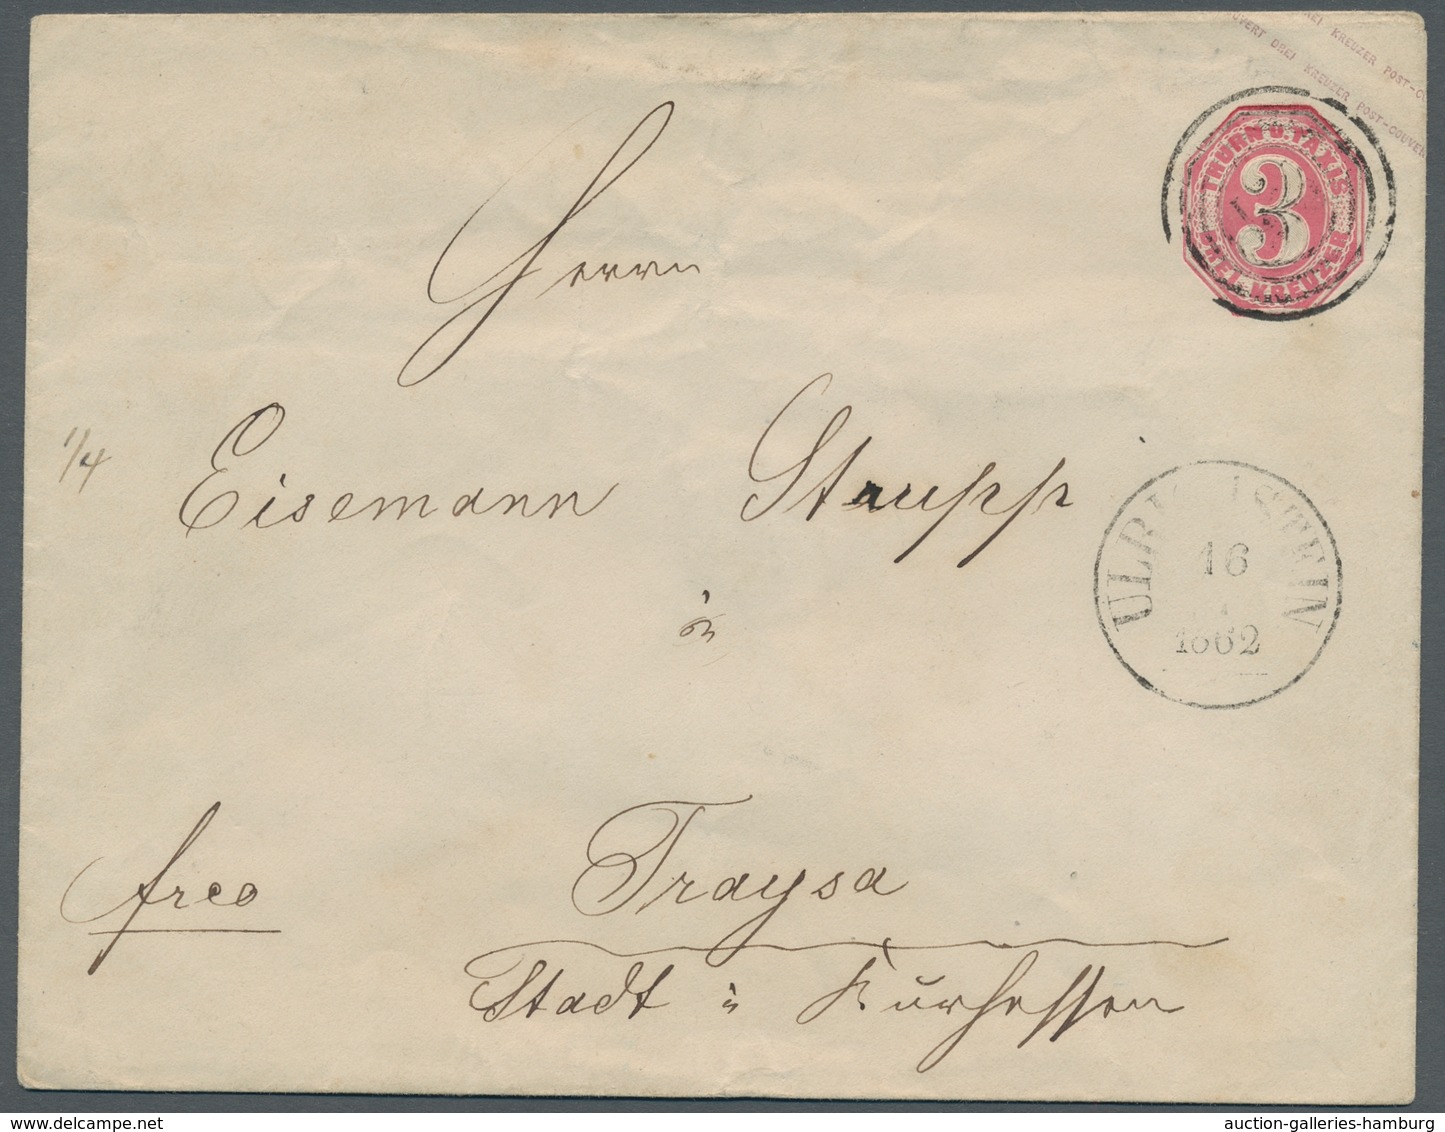 Thurn & Taxis - Marken und Briefe: 1852 - 1866; beeindruckende Sammlung von 77 Briefen und Ganzsache